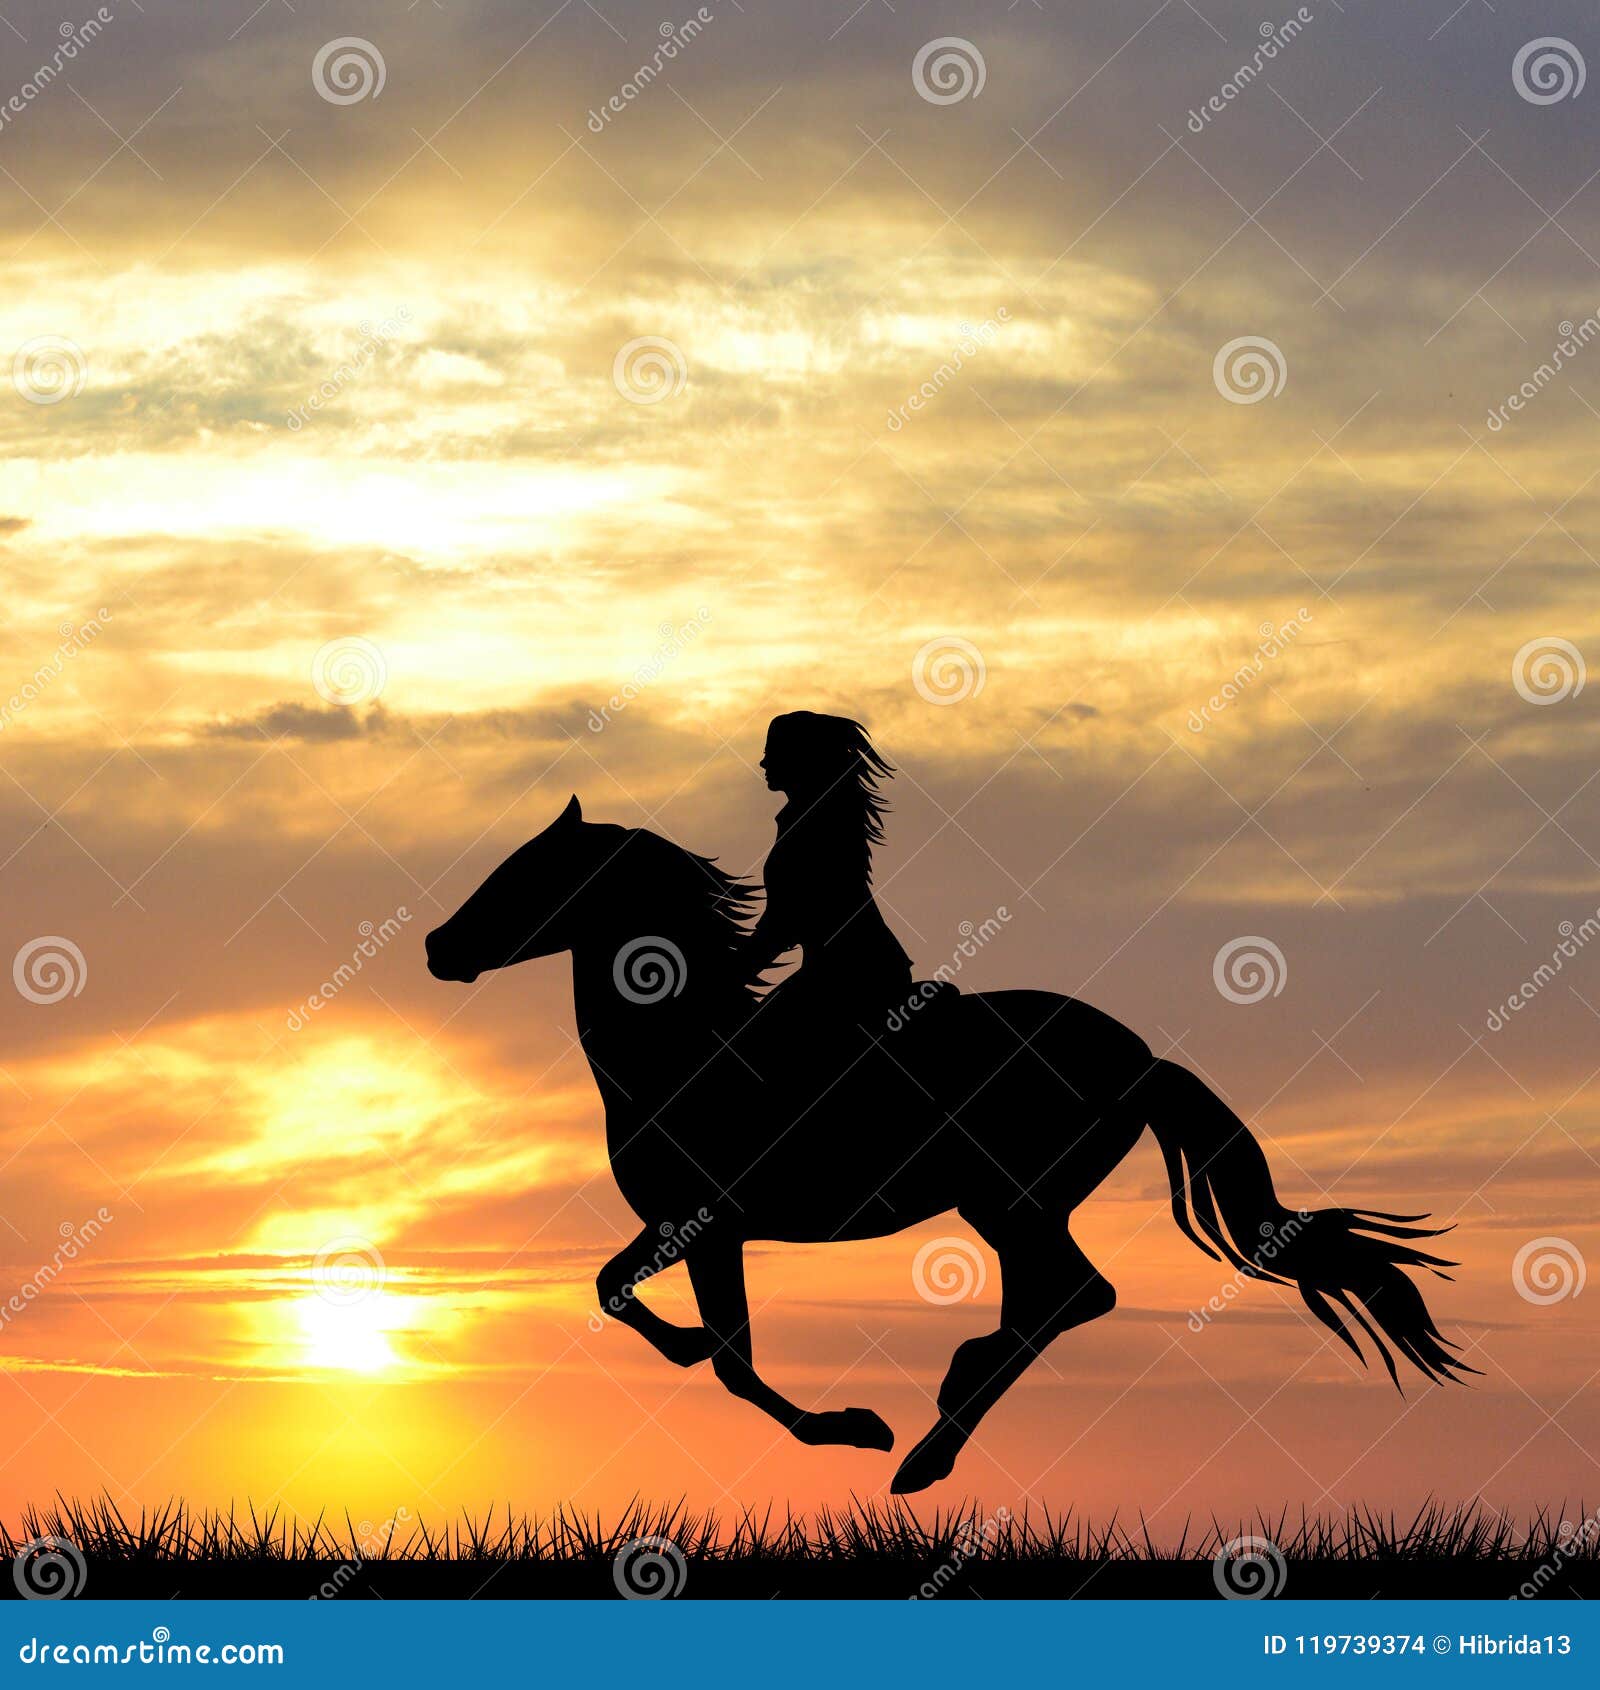 Orelhas Do Cavalo Na Frente De Uma Montanha Em Uma Tarde Do Por Do Sol  Imagem de Stock - Imagem de montanhas, elegante: 117089471